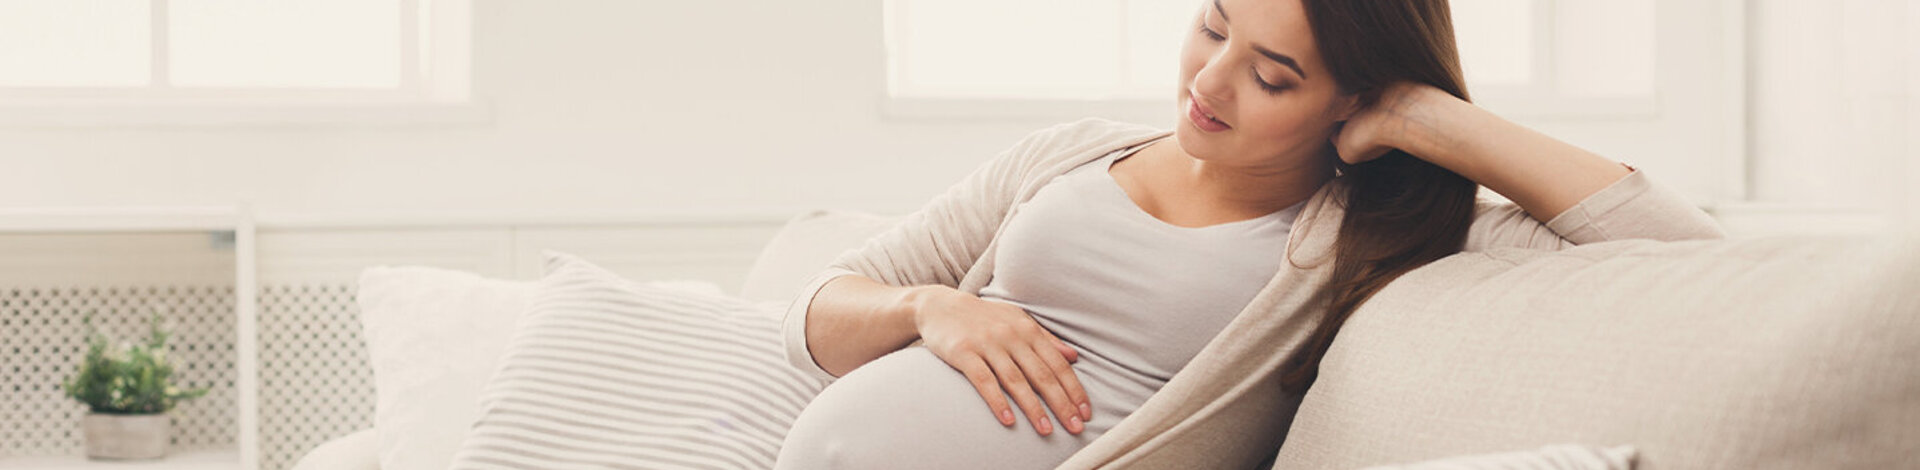 Eine junge, schwangere Frau sitzt auf dem Sofa und streichelt sich über den Bauch.